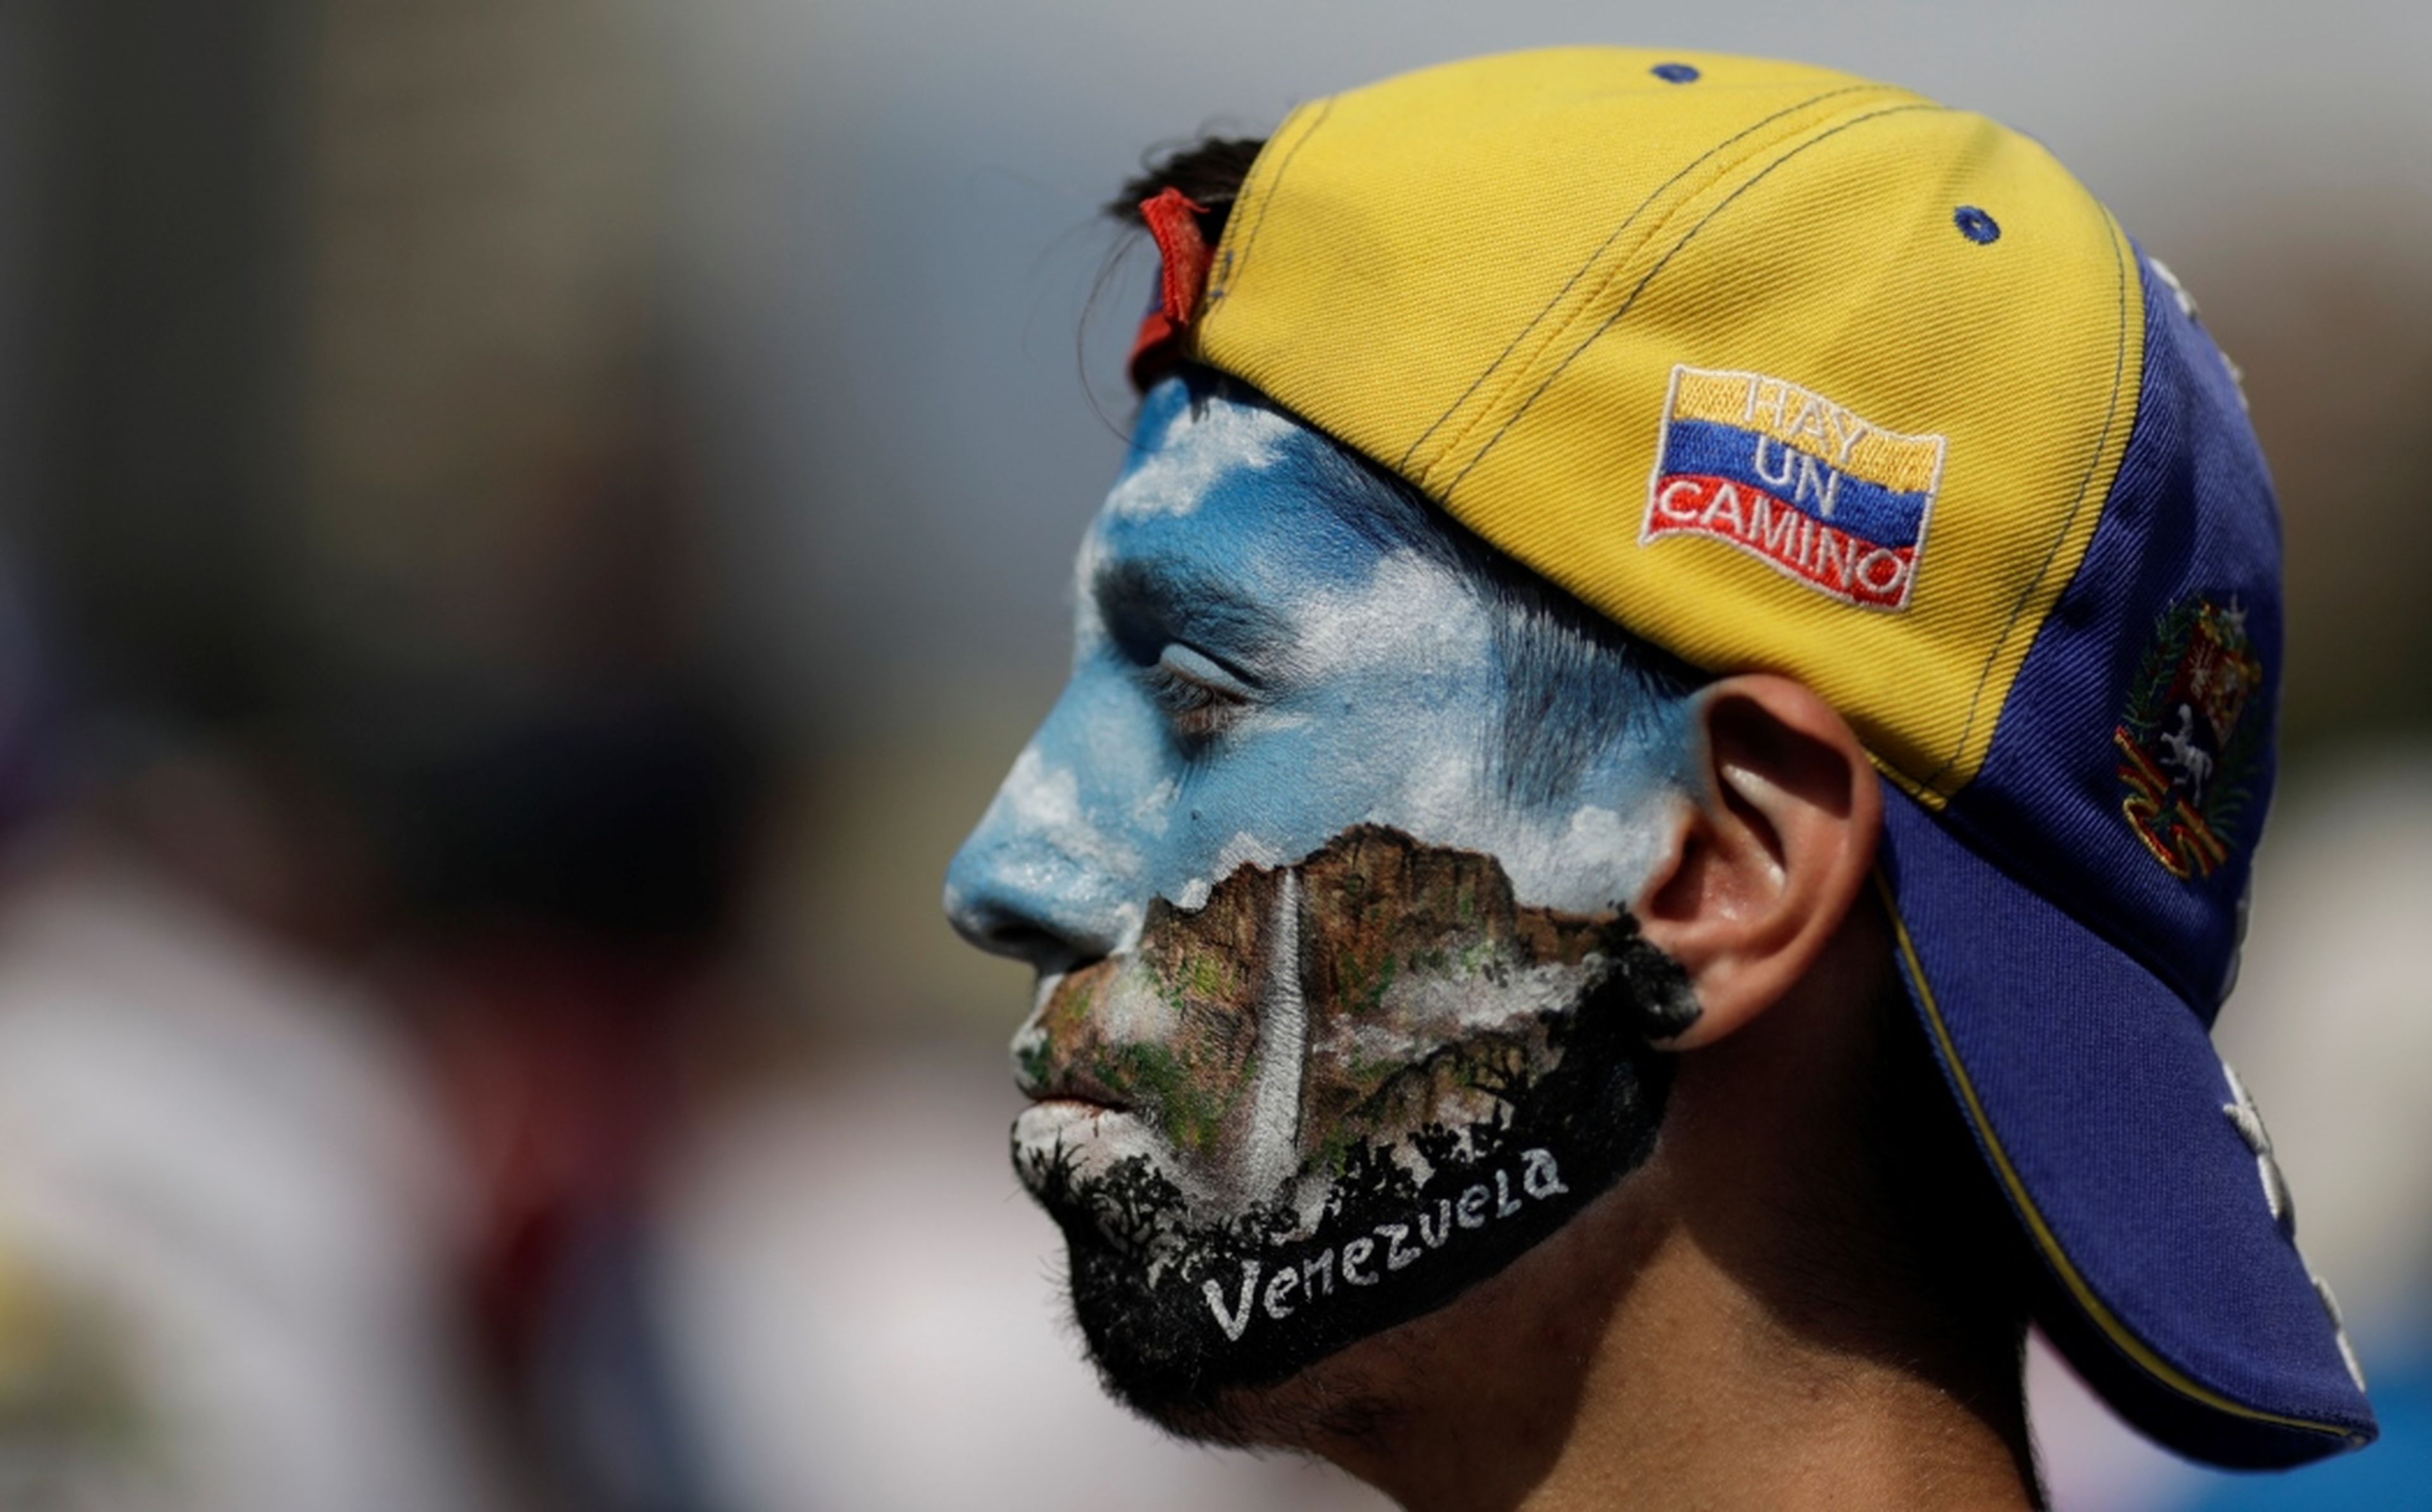 Un manifestante en la protesta contra el Gobierno de Nicolás Maduro en Caracas, Venezuela, el 1 de mayo.